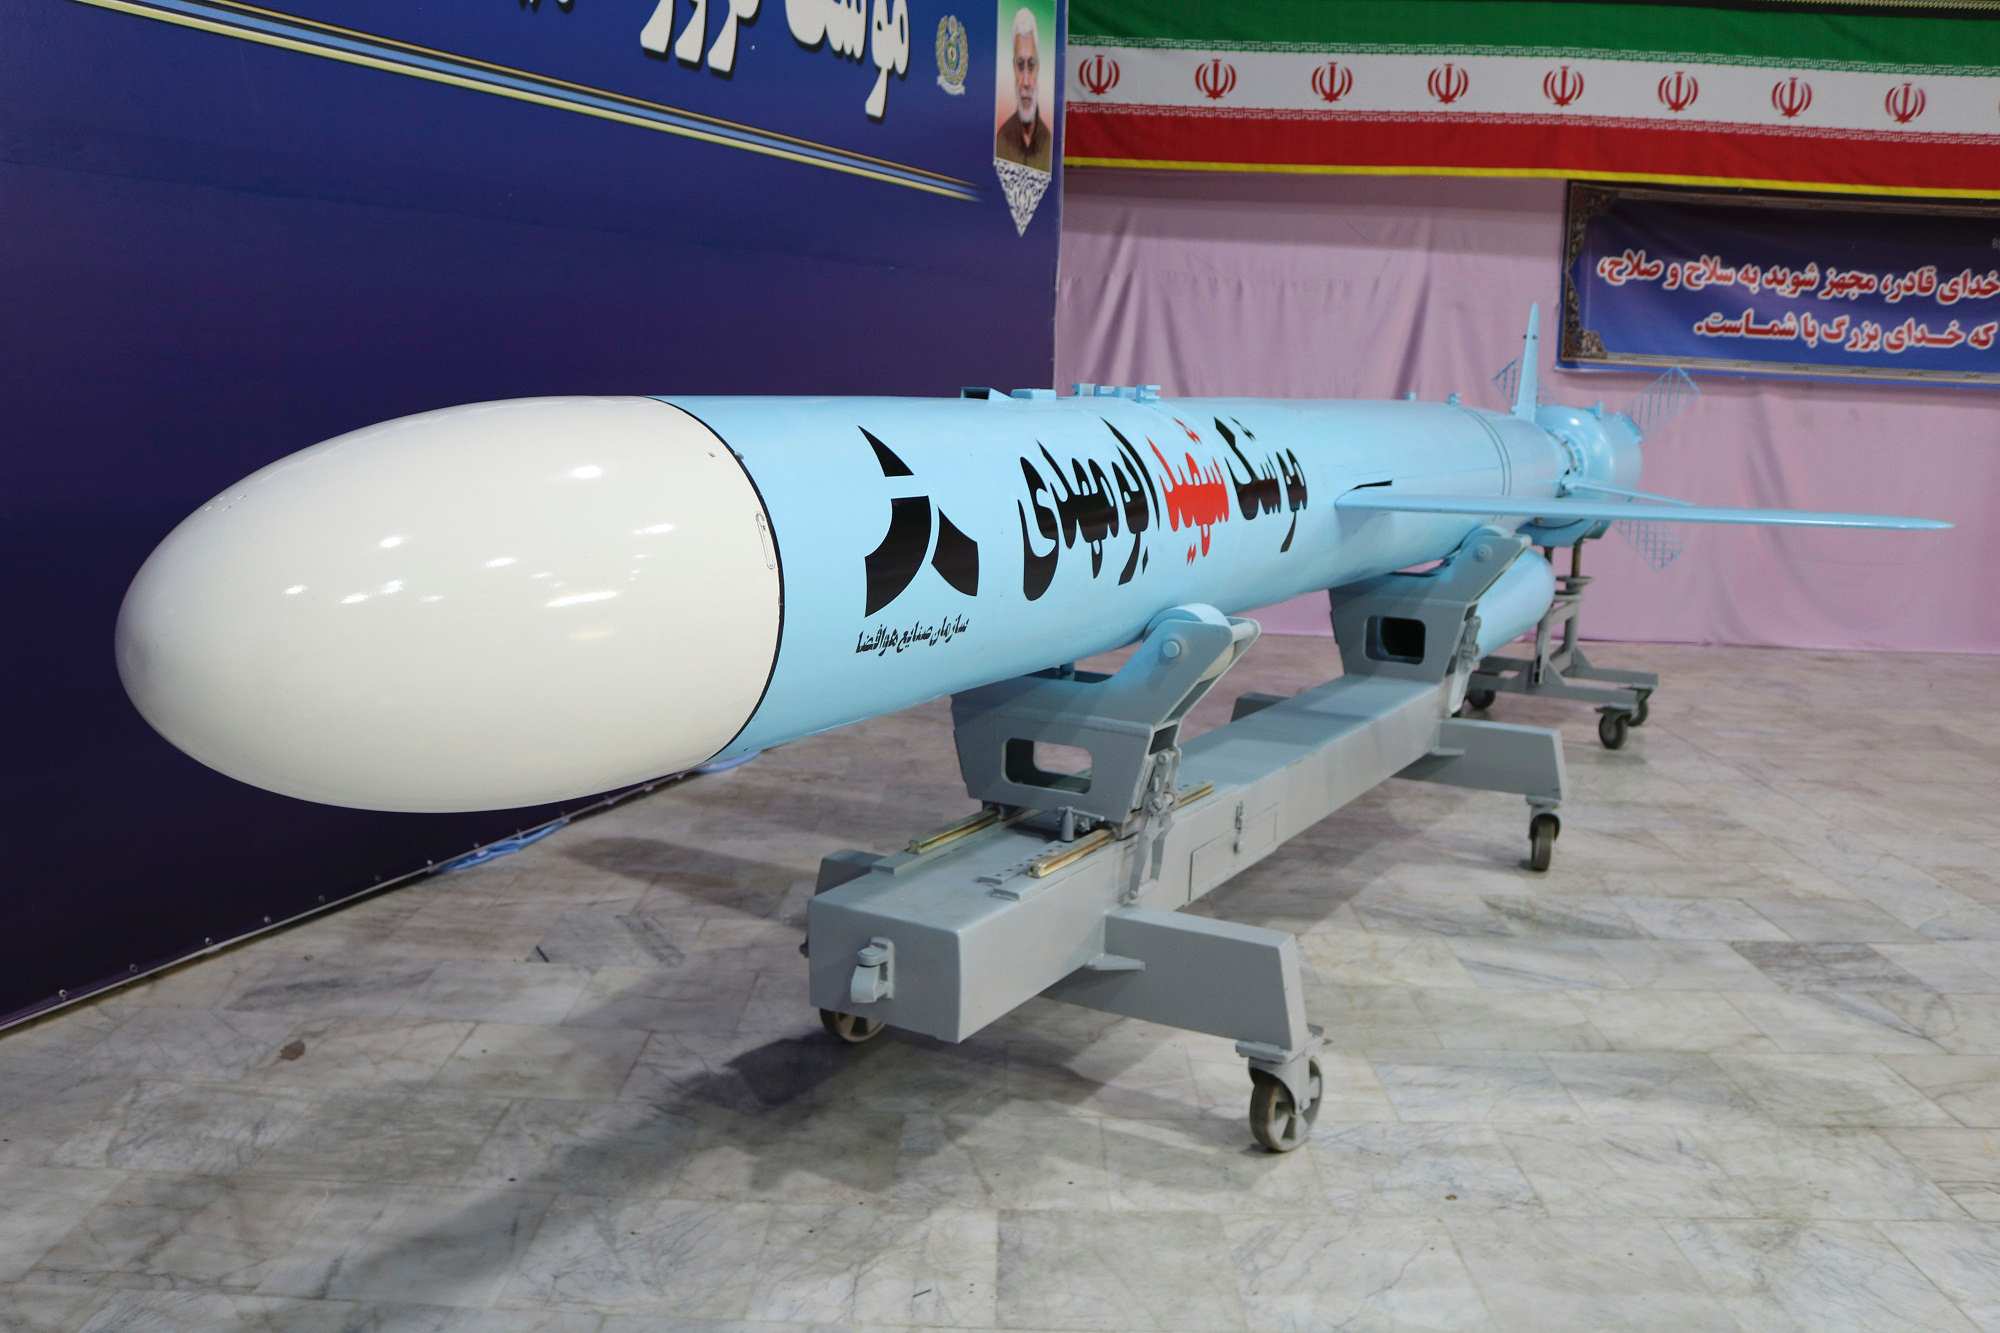 一枚浅蓝色导弹展示在带有阿布·马赫迪 (Abu Mahdi) 图片的蓝色横幅前。